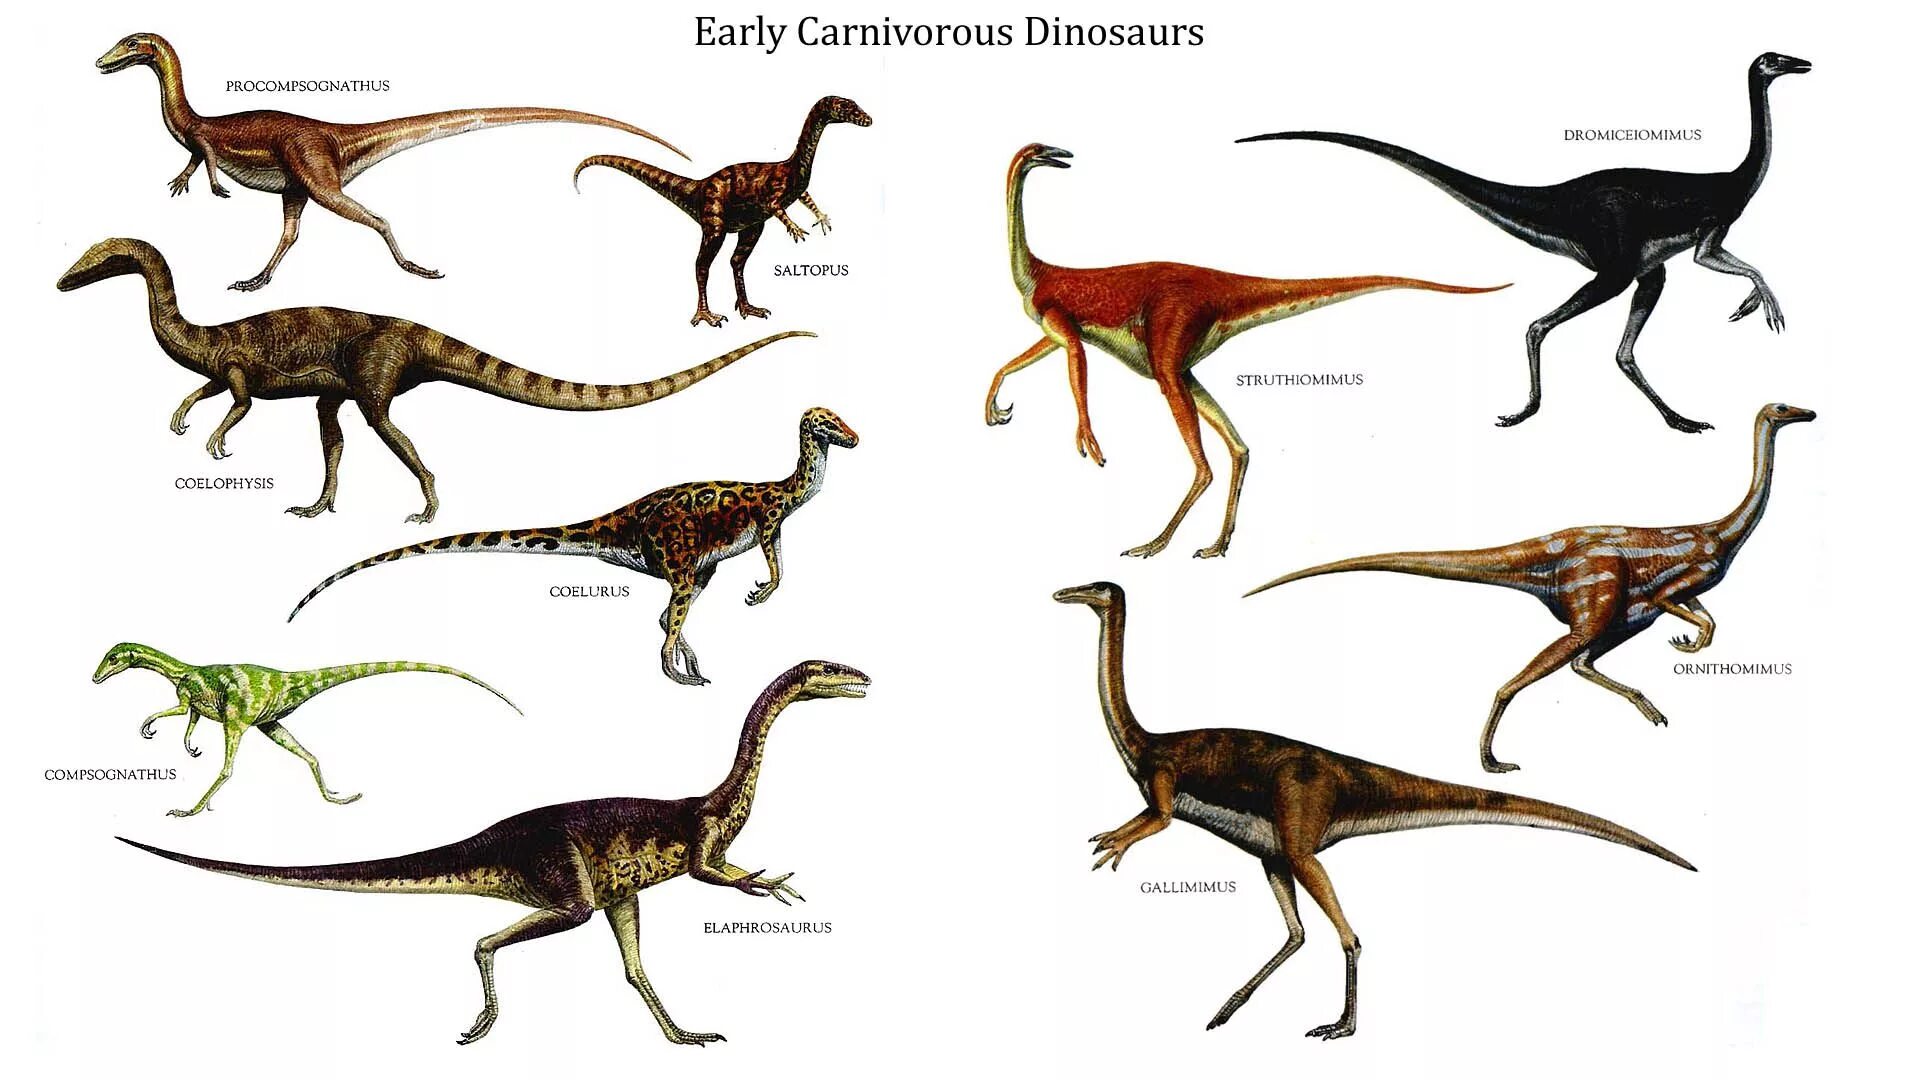 Как назывались маленькие динозавры. Маленькие травоядные динозавры. Галлимим орнитомим Струтиомим. Компсогнат. Спинозавр ufkbvbv ufkbvbv lbgkjljr.